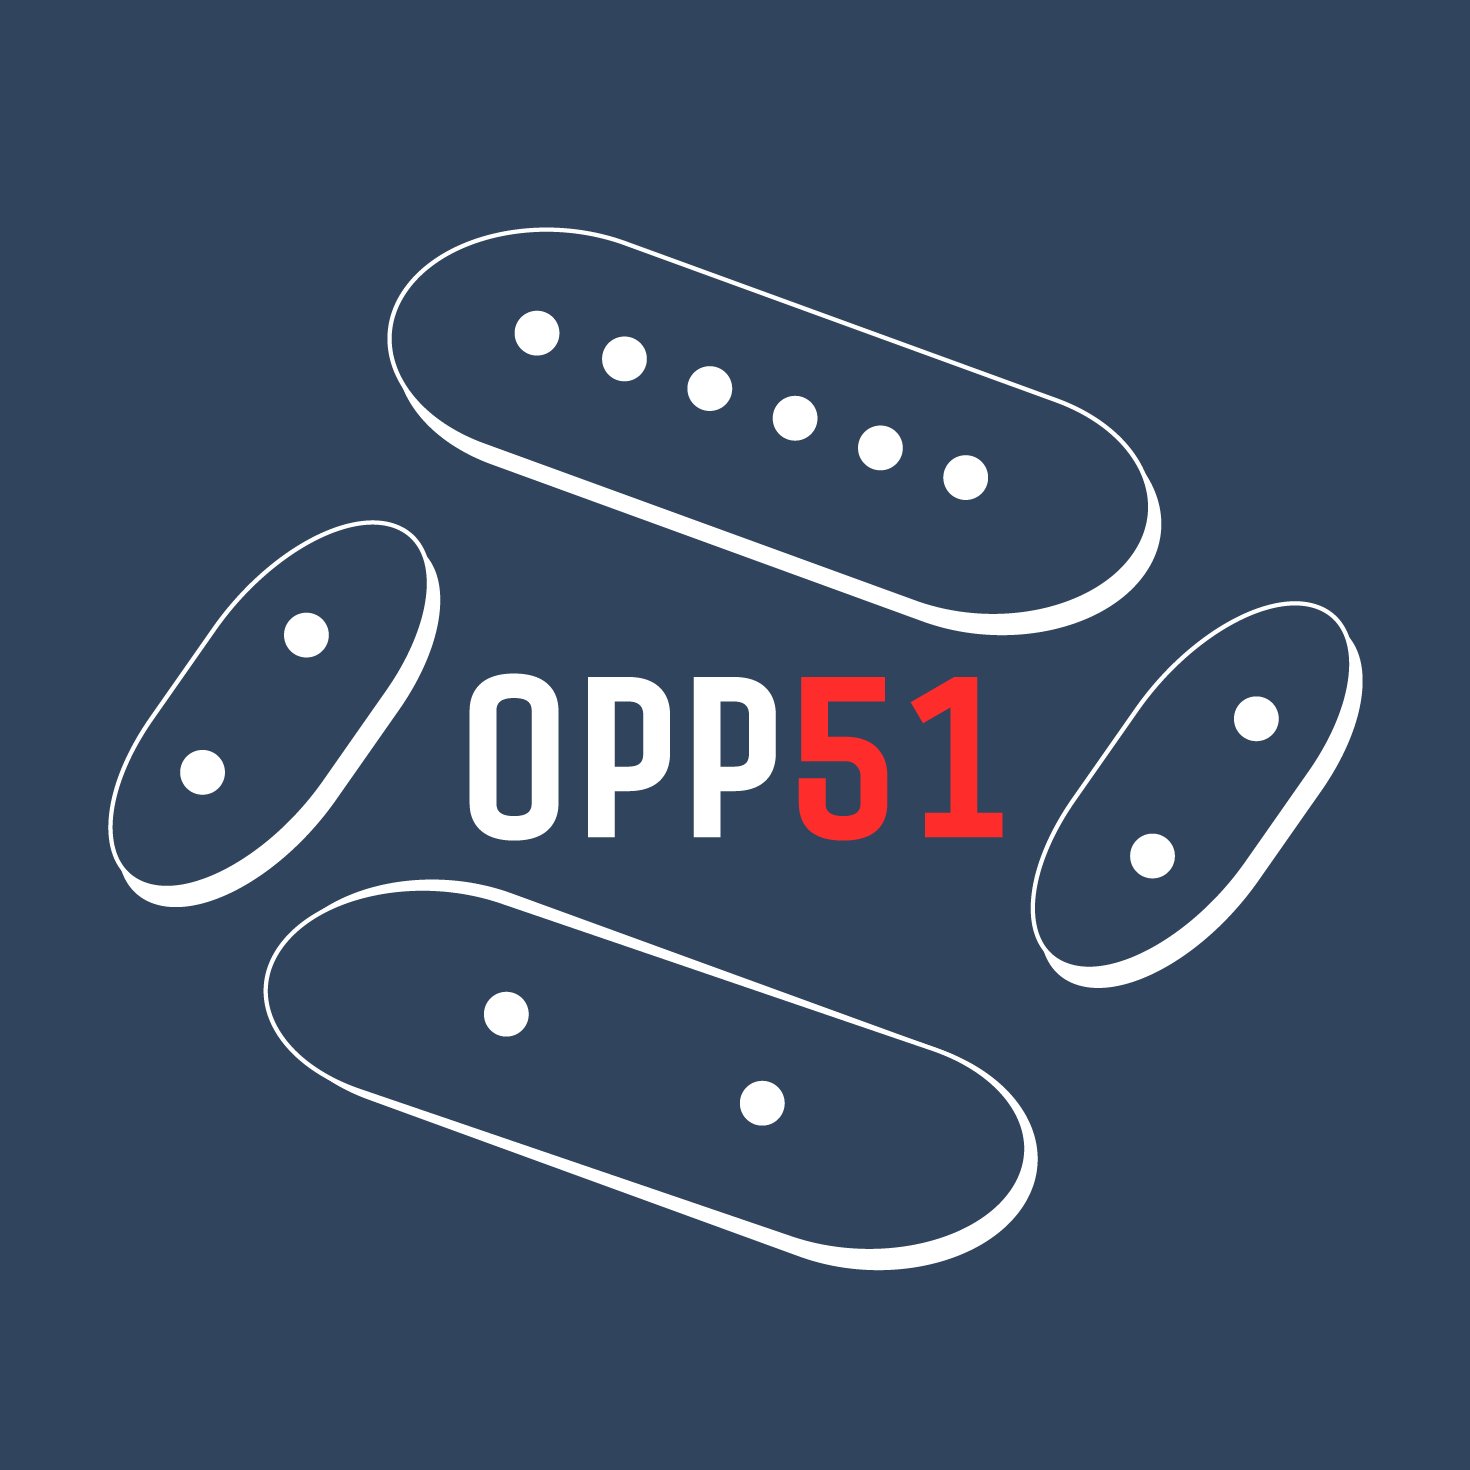 OPP51